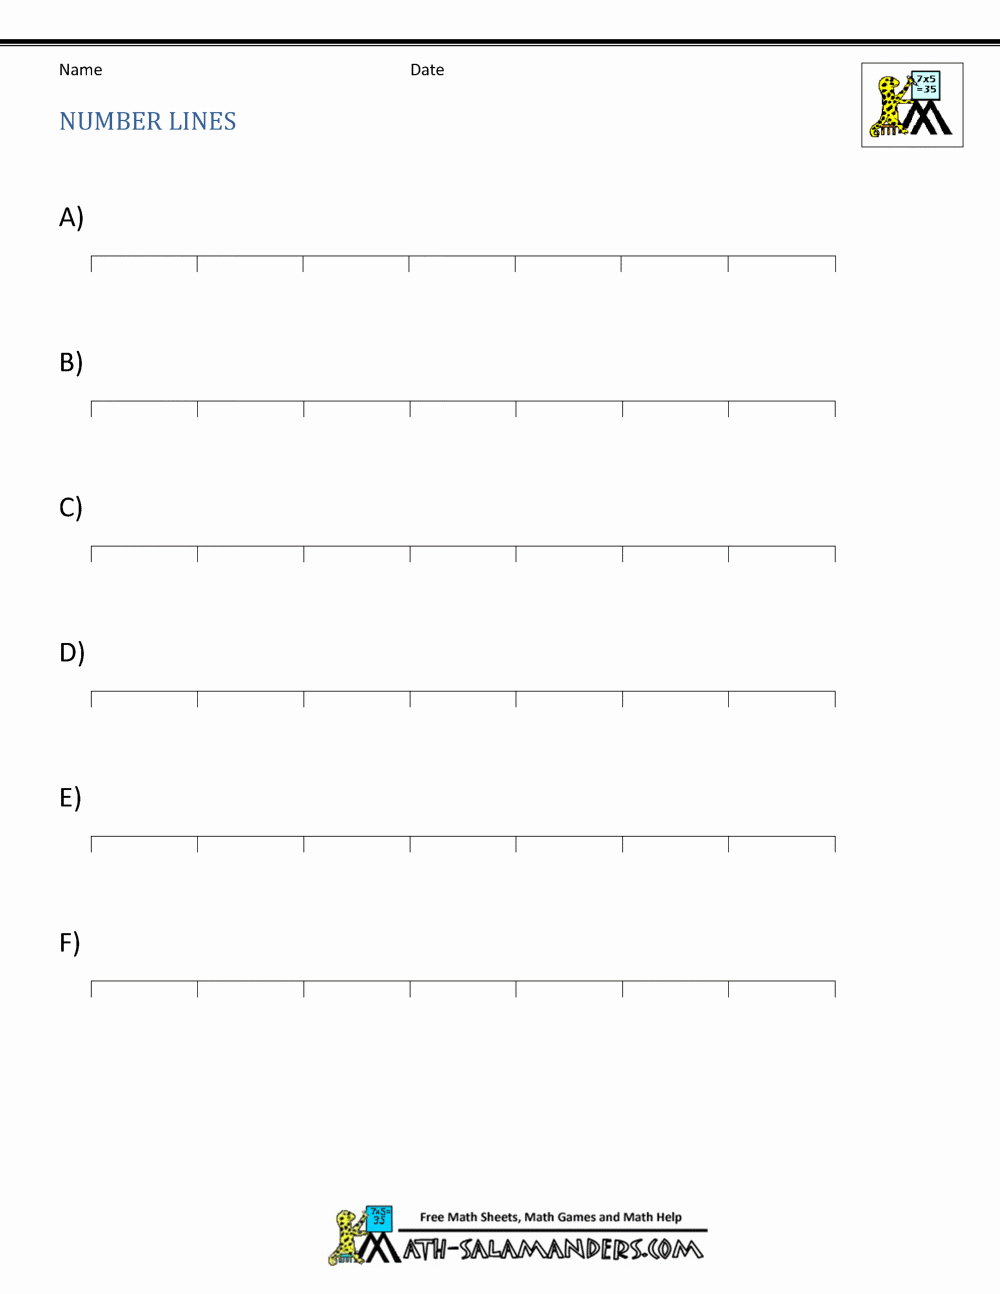 Blank Number Line Worksheet Inspirational Blank Number Lines